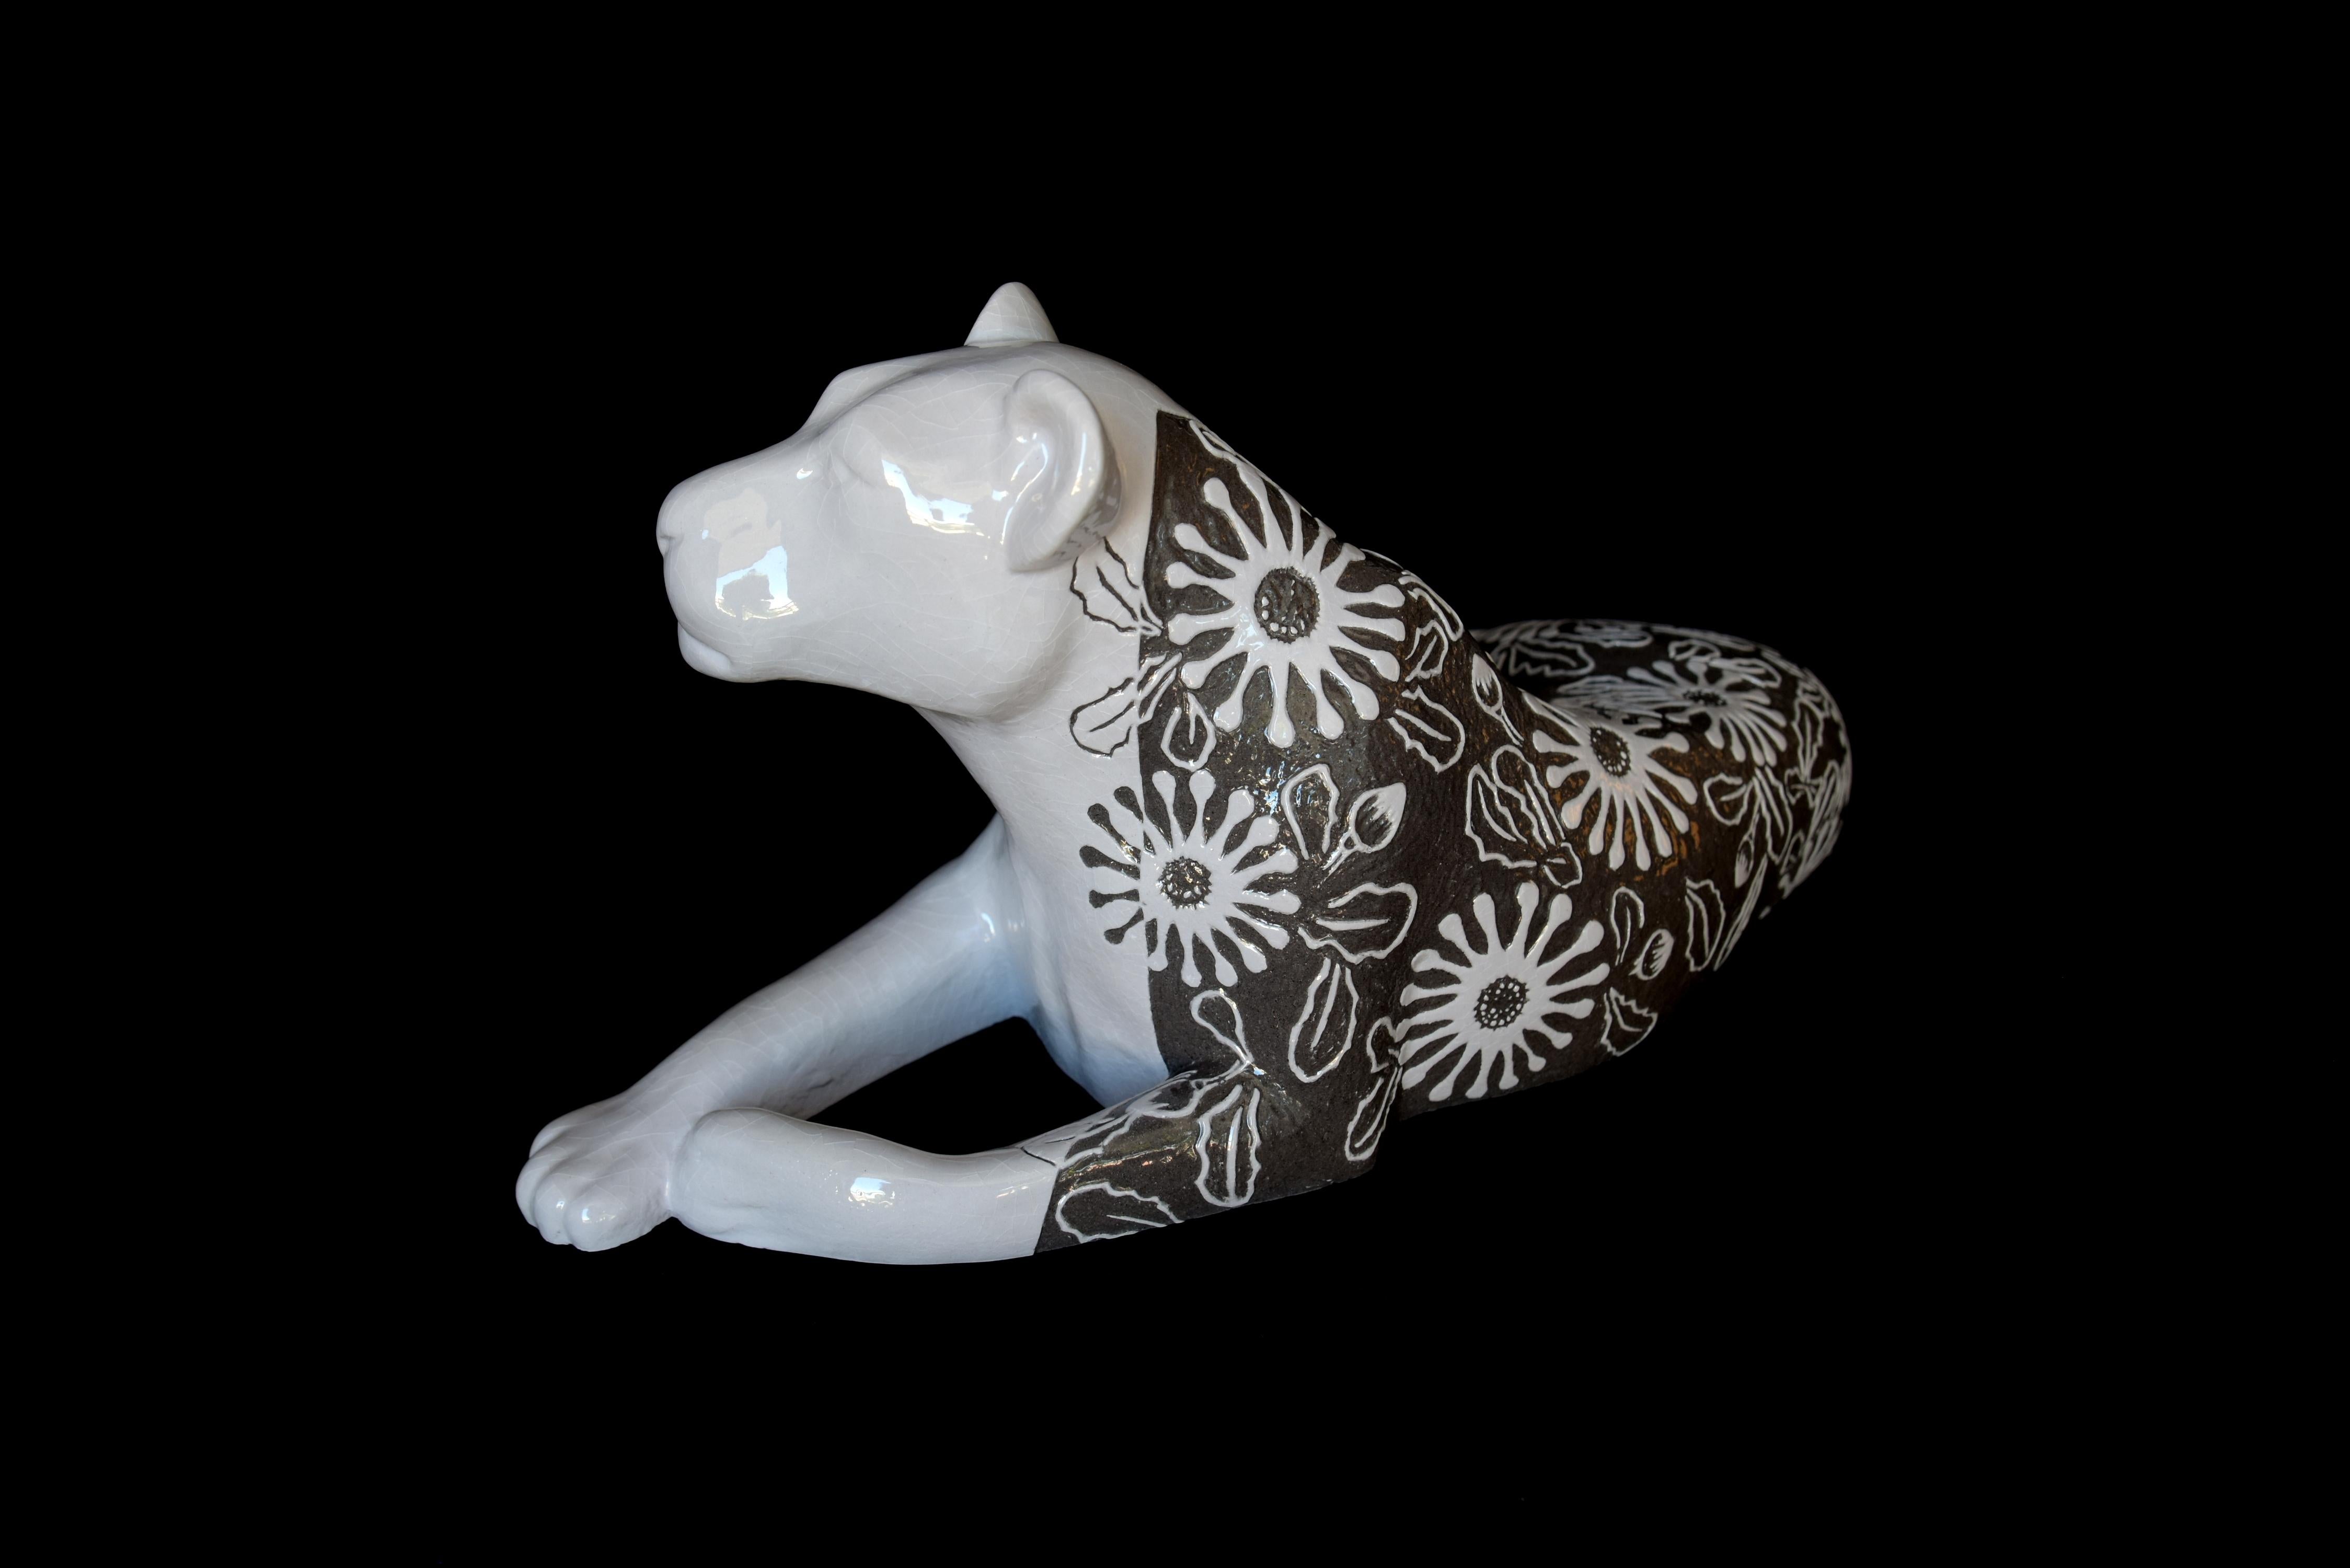 "Lioness - Osteospermum", unique, animal sculpture, ceramic, sgraffito technique